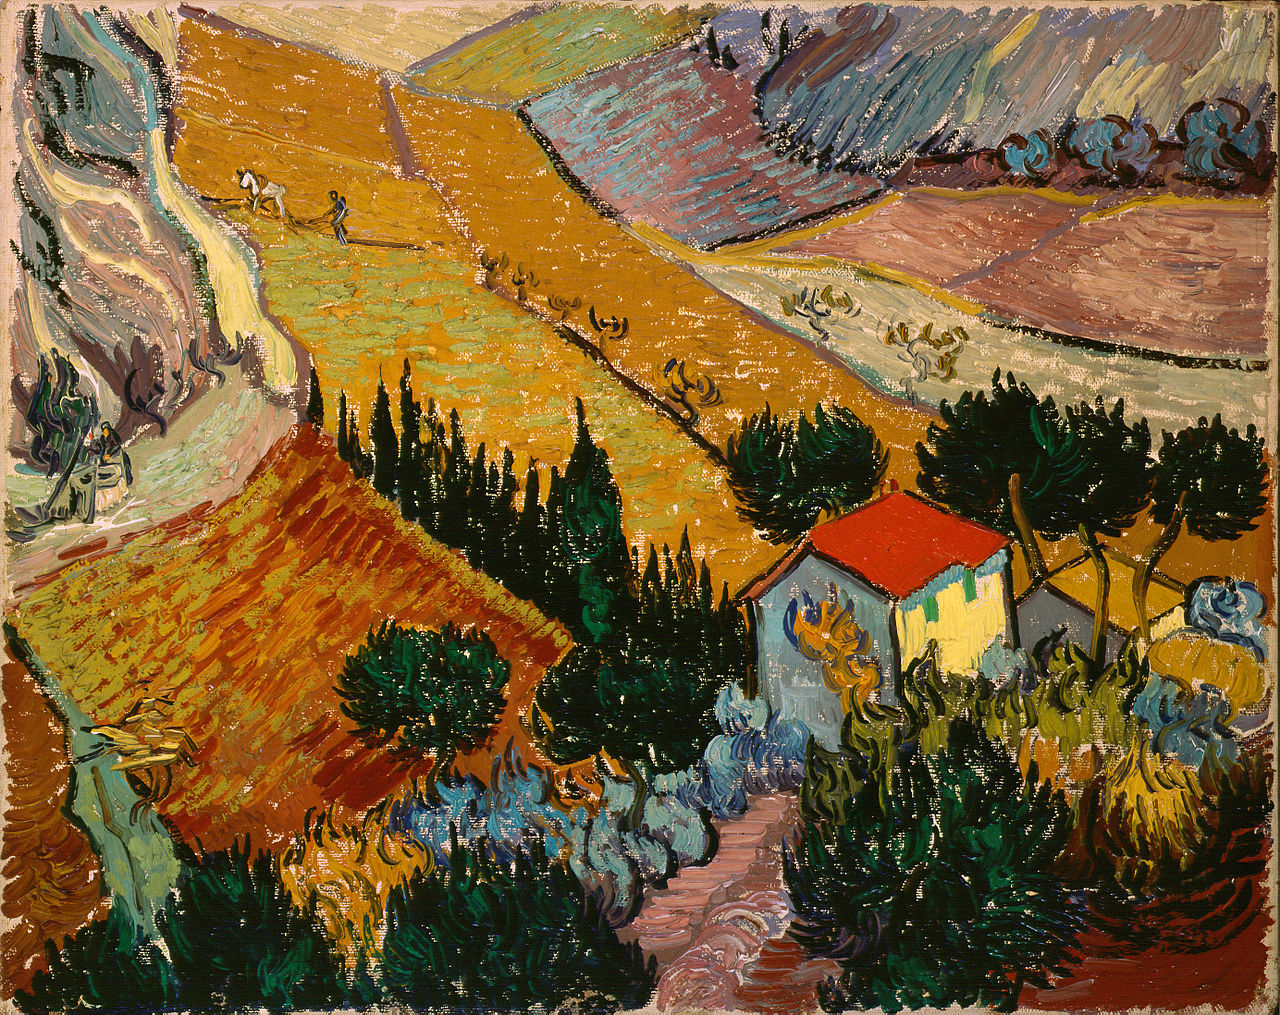 Paisaje con casa y arado by Vincent van Gogh - 1889 - 33 x 41.4 cm Museo del Hermitage